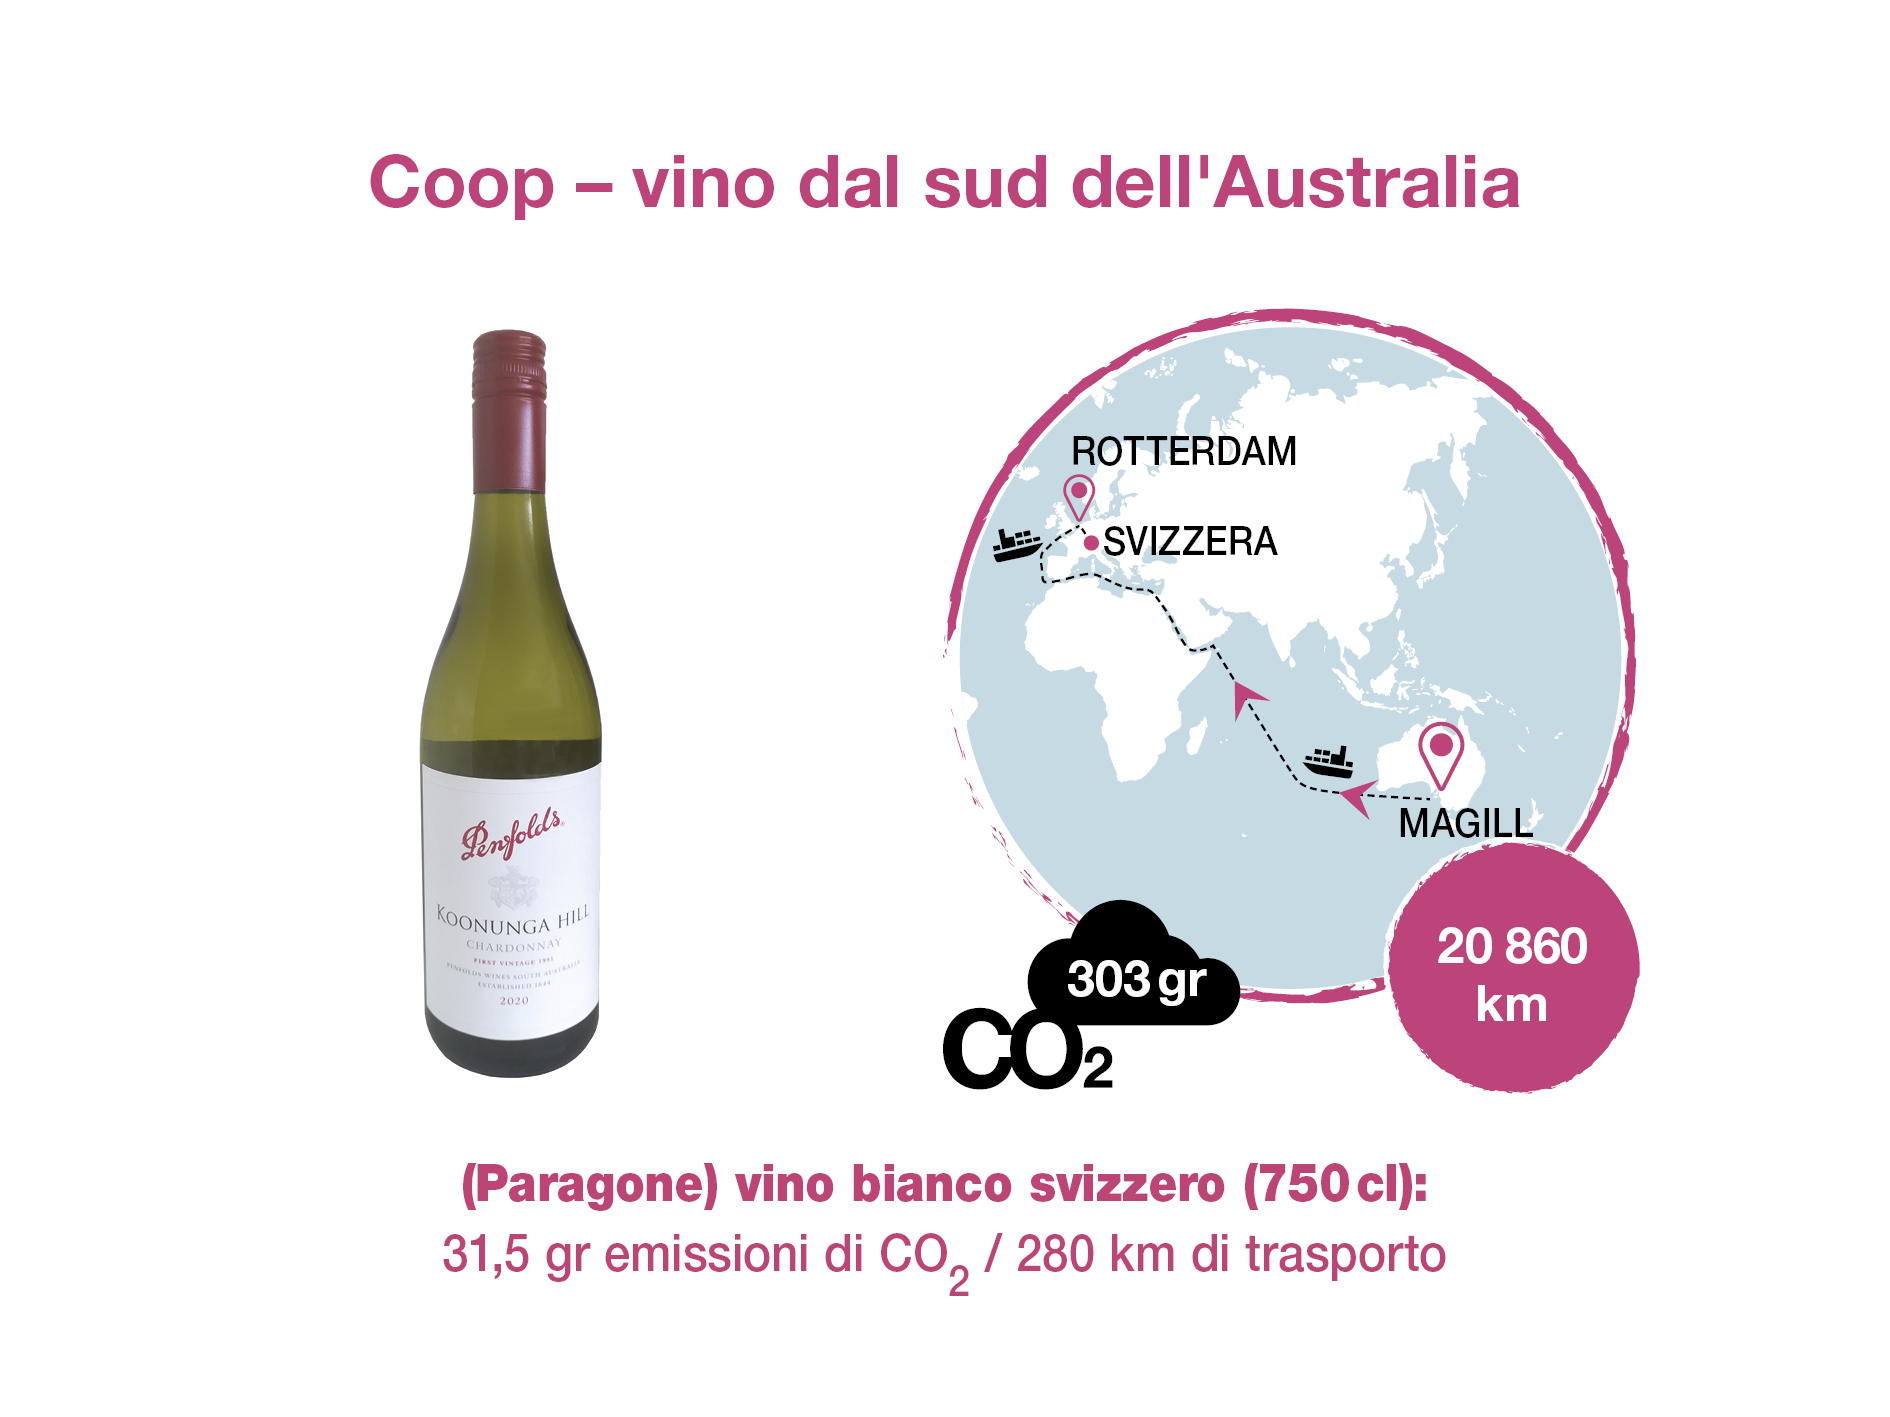 Vino bianco dal sud dell’Australia, Coop. Calcolazioni CO2: Quantis; Grafico: Scriptum.